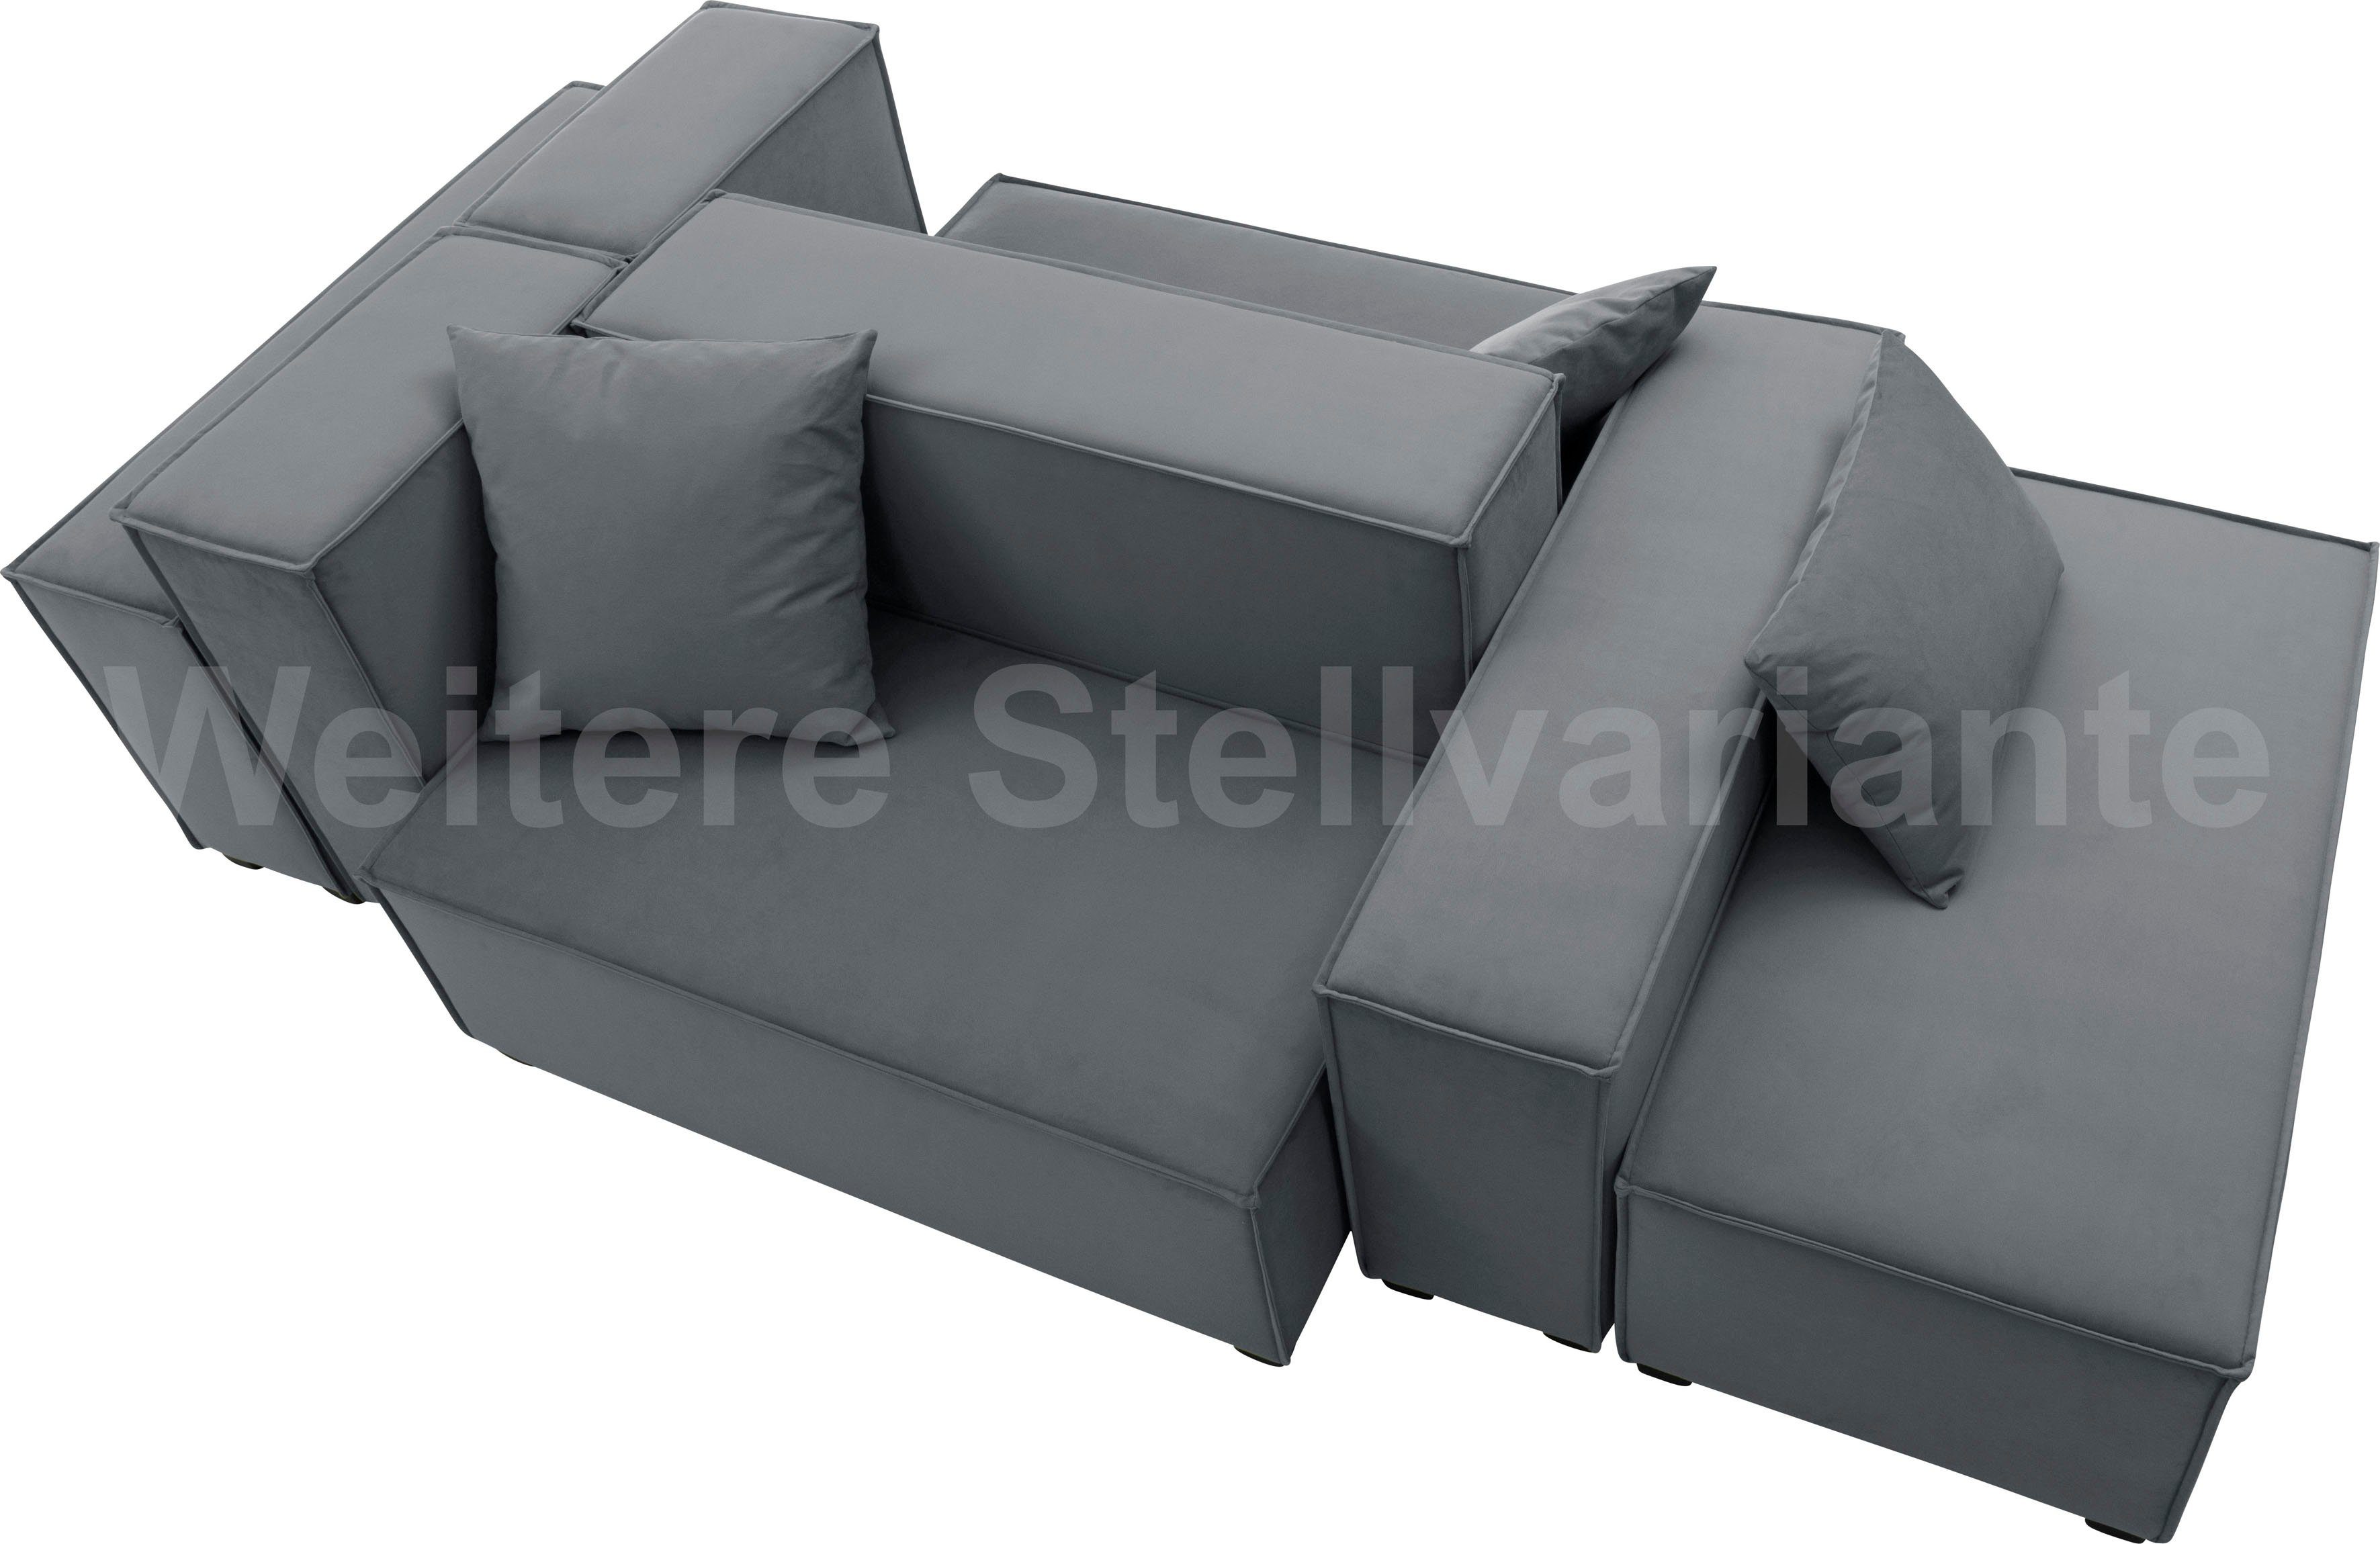 Wohnlandschaft kombinierbar 8 MOVE, Winzer® Max grau inklusive Set, 3 Sofa-Set Sitz-Elementen, Zierkissen, aus 06